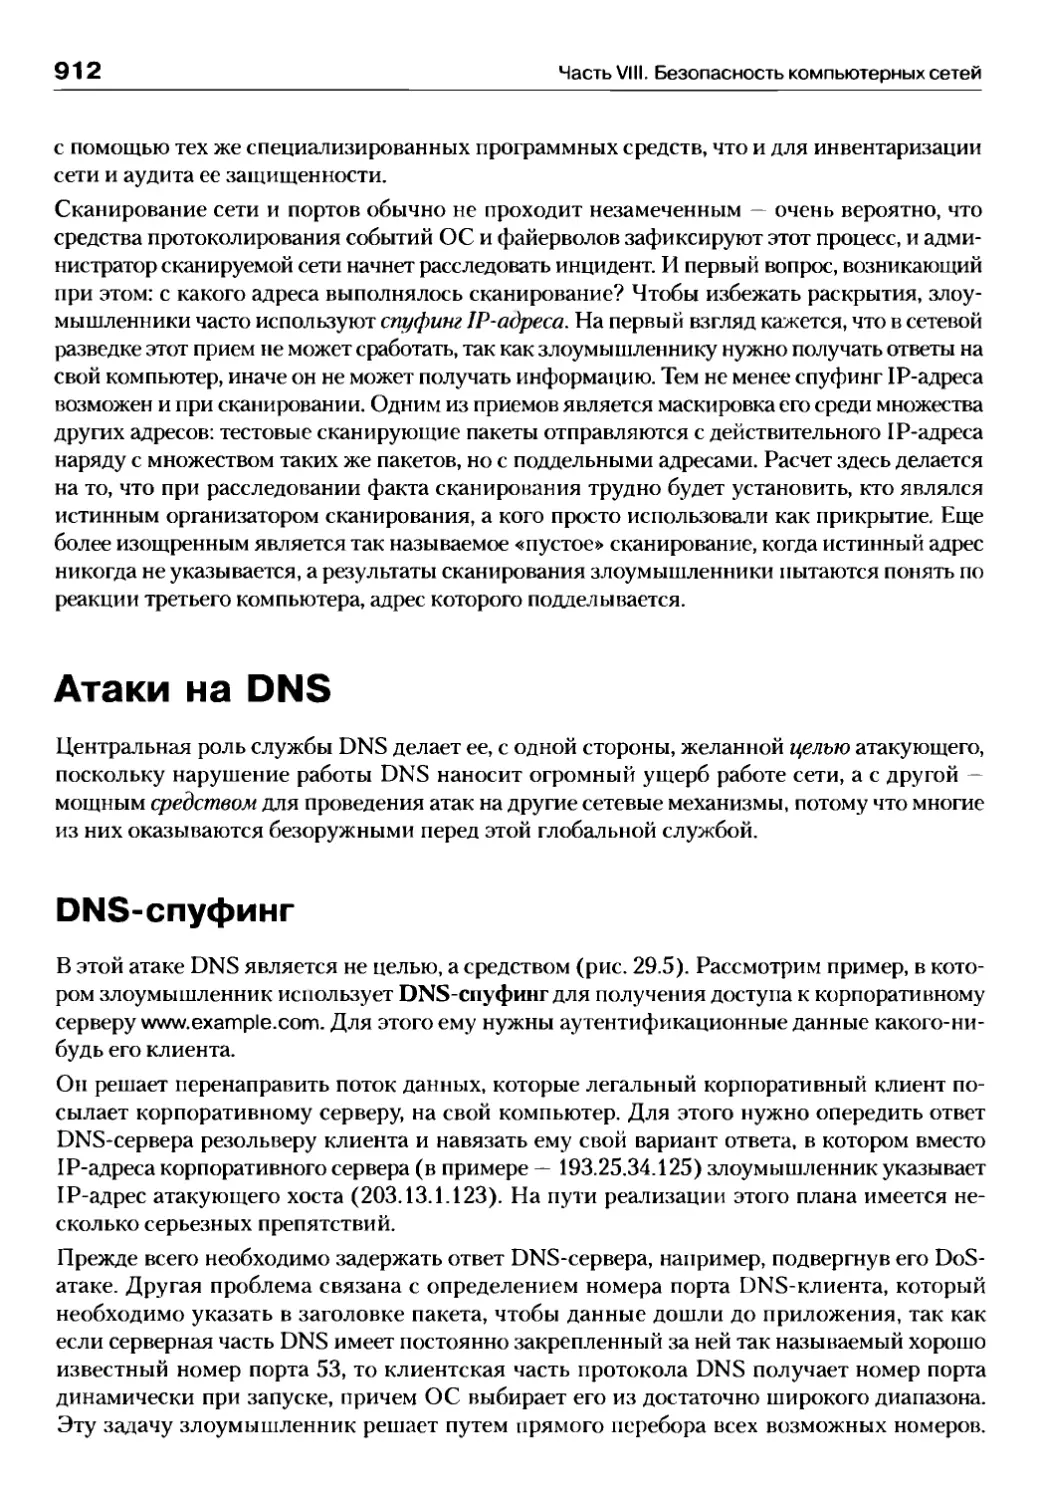 Атаки на DNS